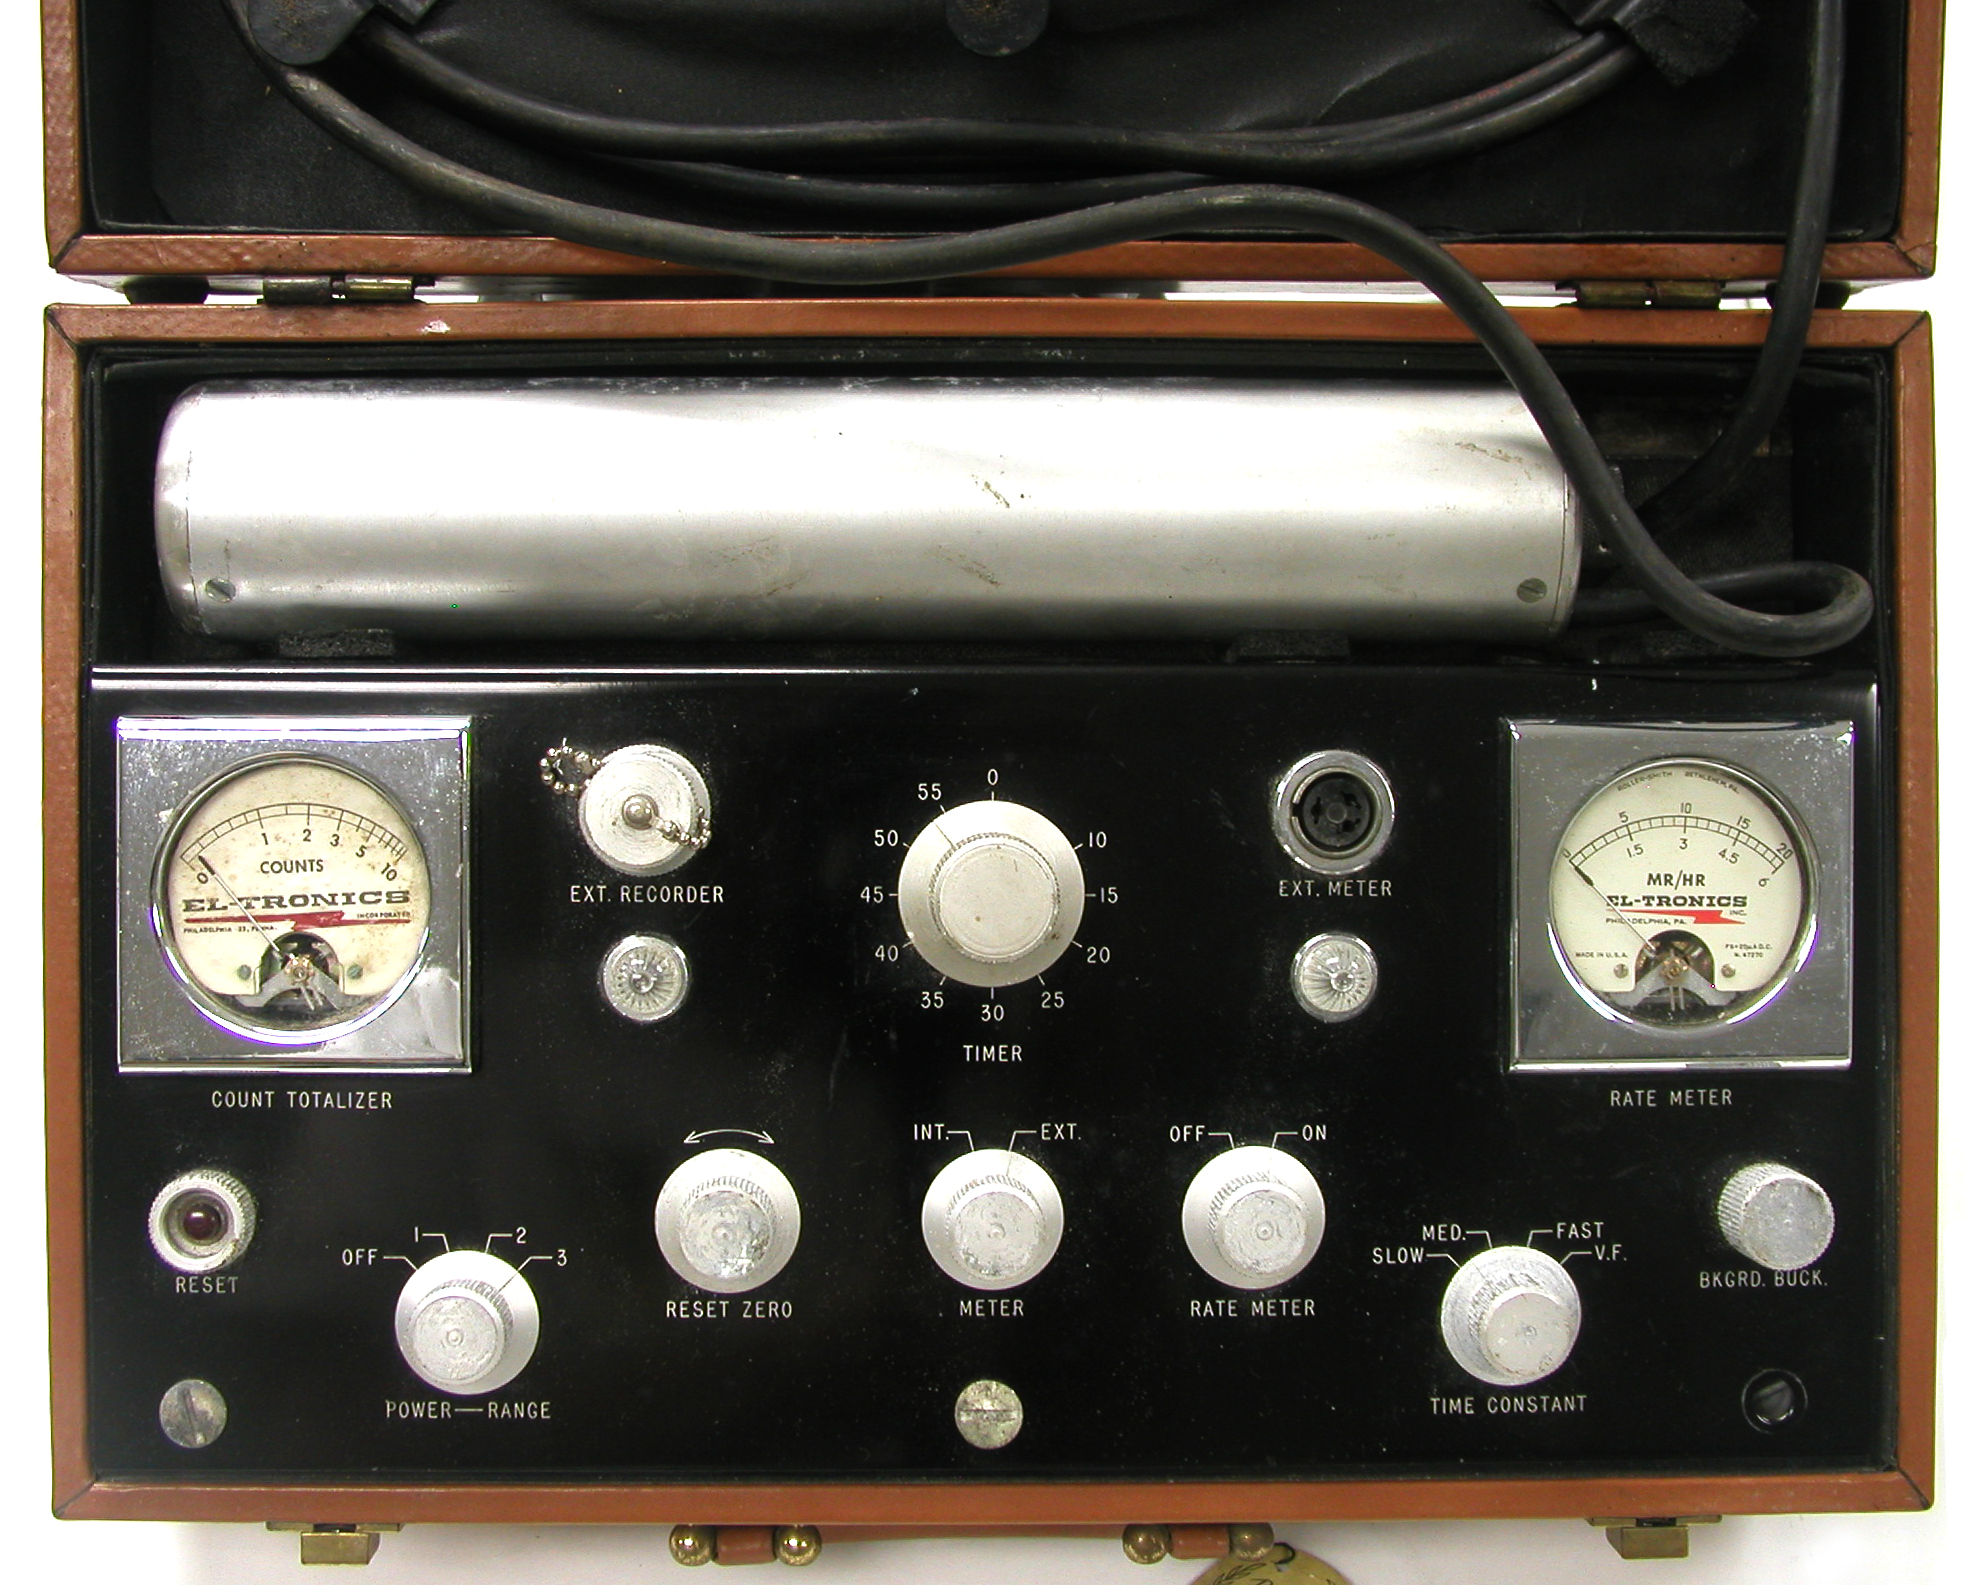 El-Tronics PR-32 Scintillation Counter